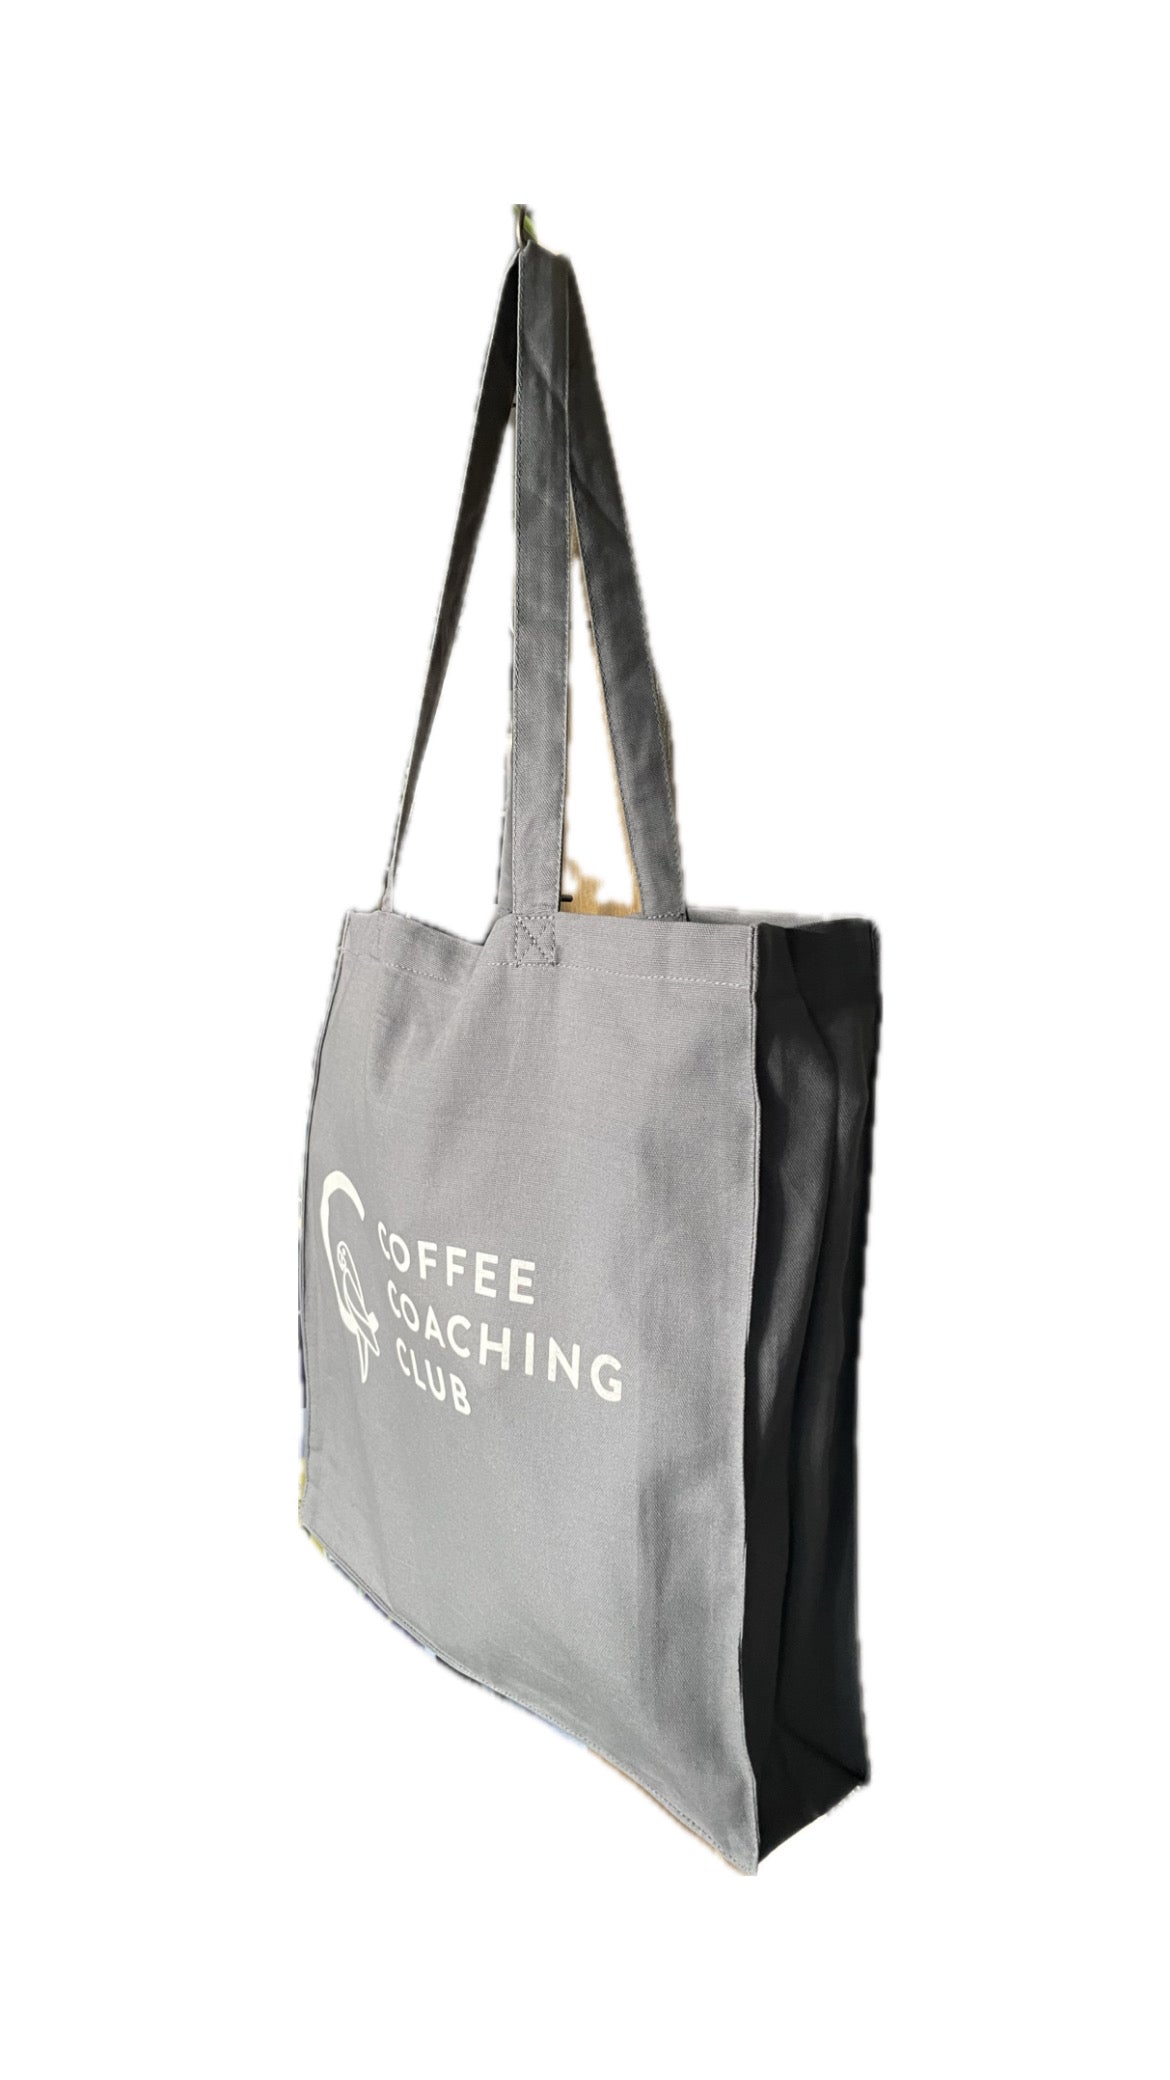 Coffee Coaching Club Tote Bag - Edelgrau - Coffee Coaching Club